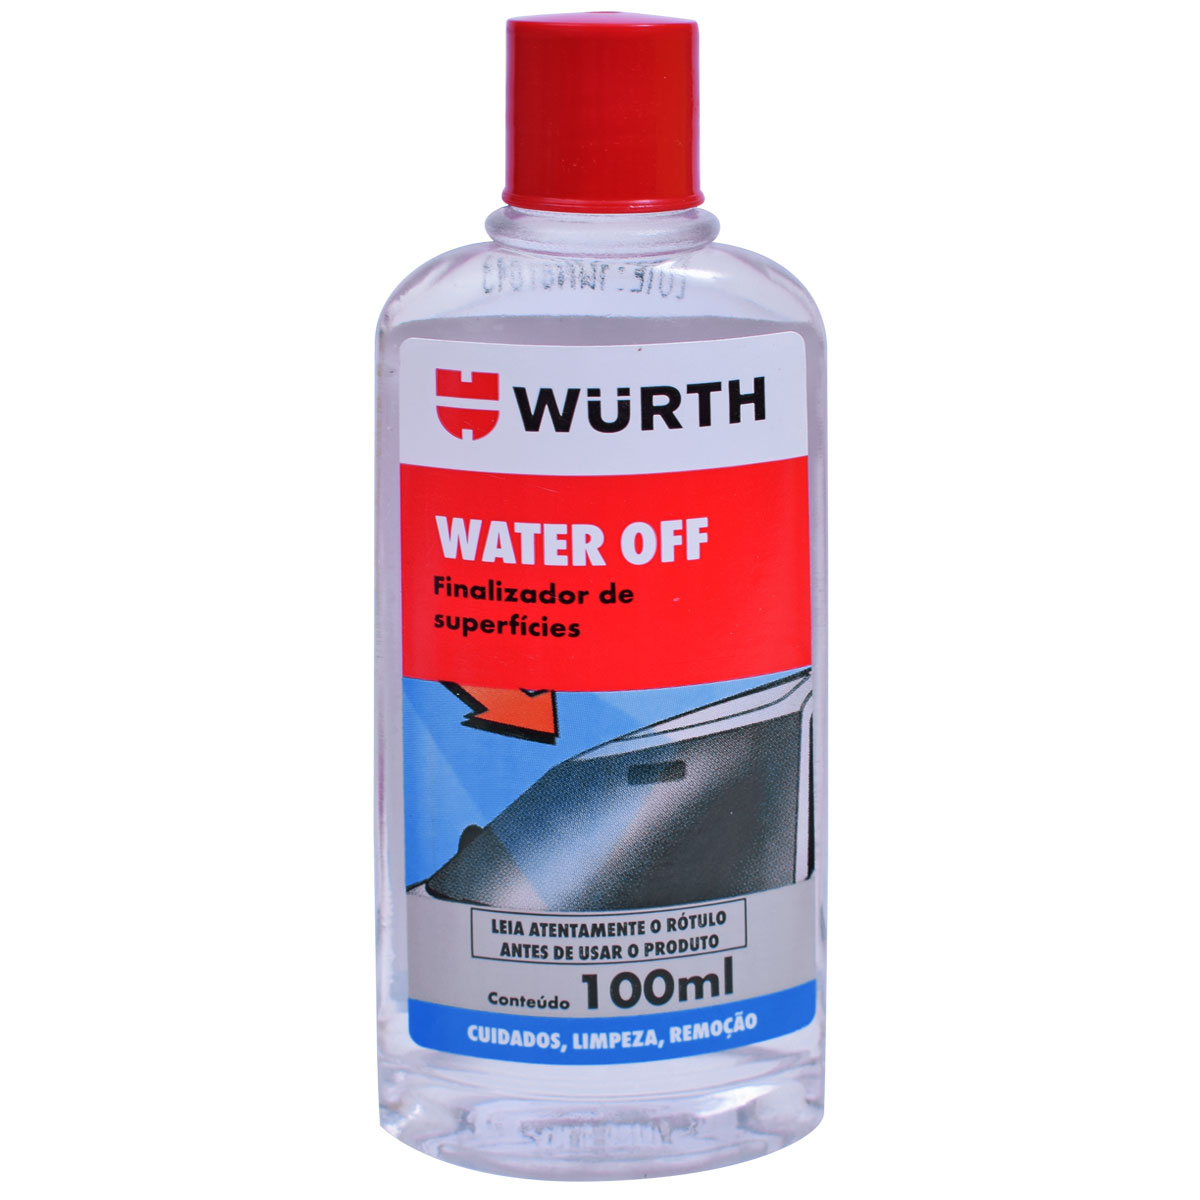 Water OFF 100ml Repelidor de Água Wurth